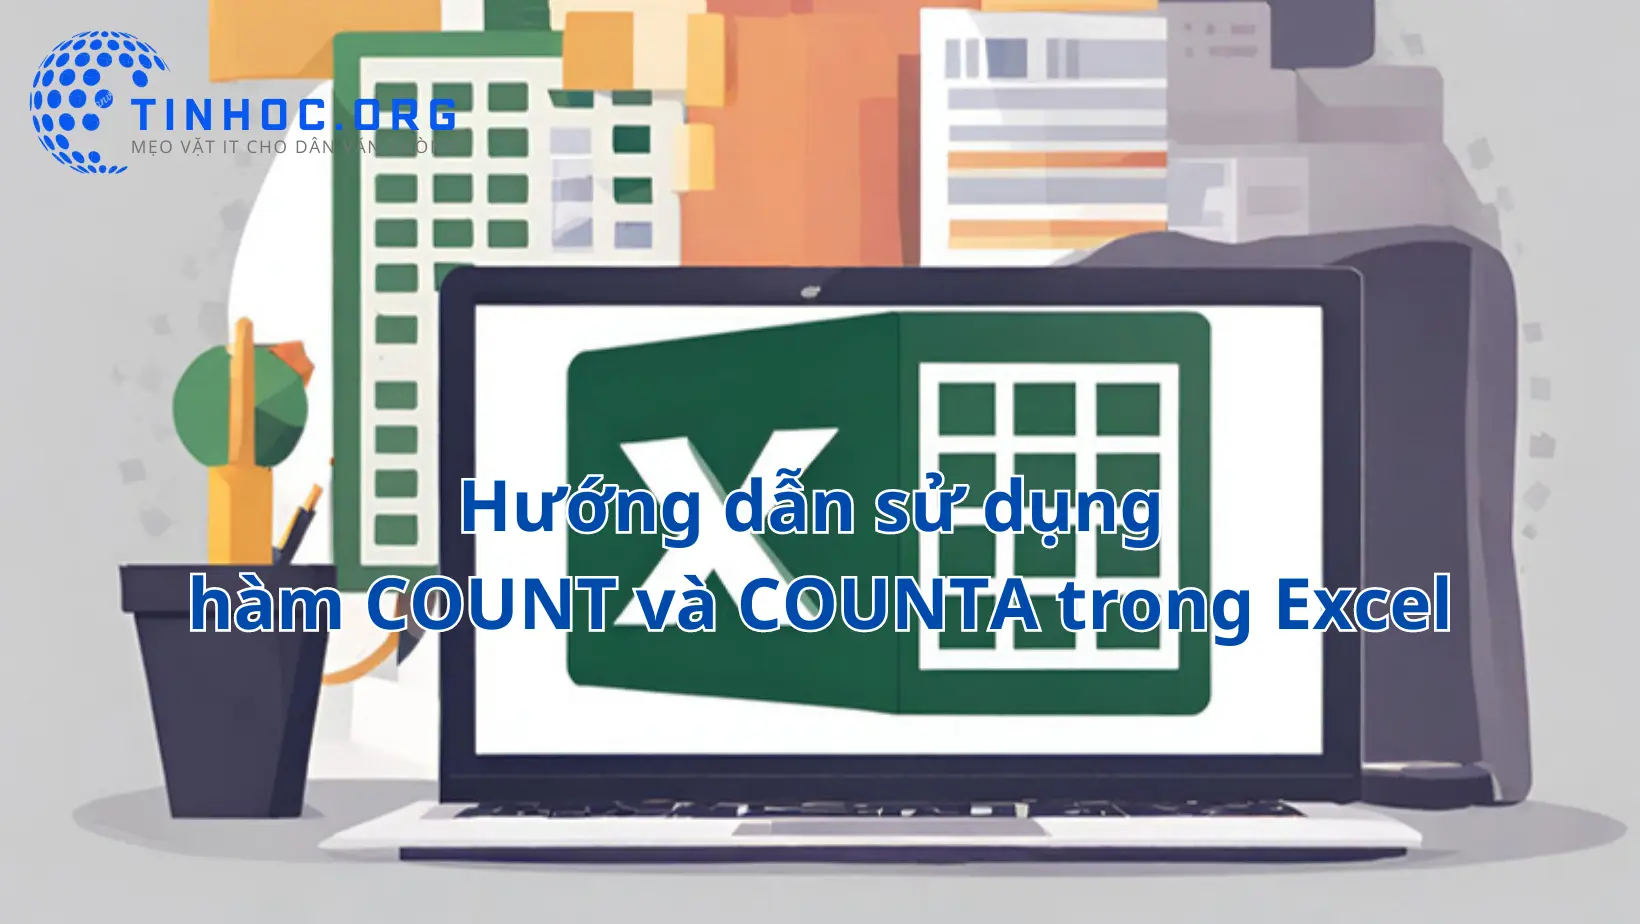 Hàm COUNT và COUNTA trong Microsoft Excel là hai công cụ quan trọng giúp bạn đếm số lượng ô có giá trị trong một phạm vi.